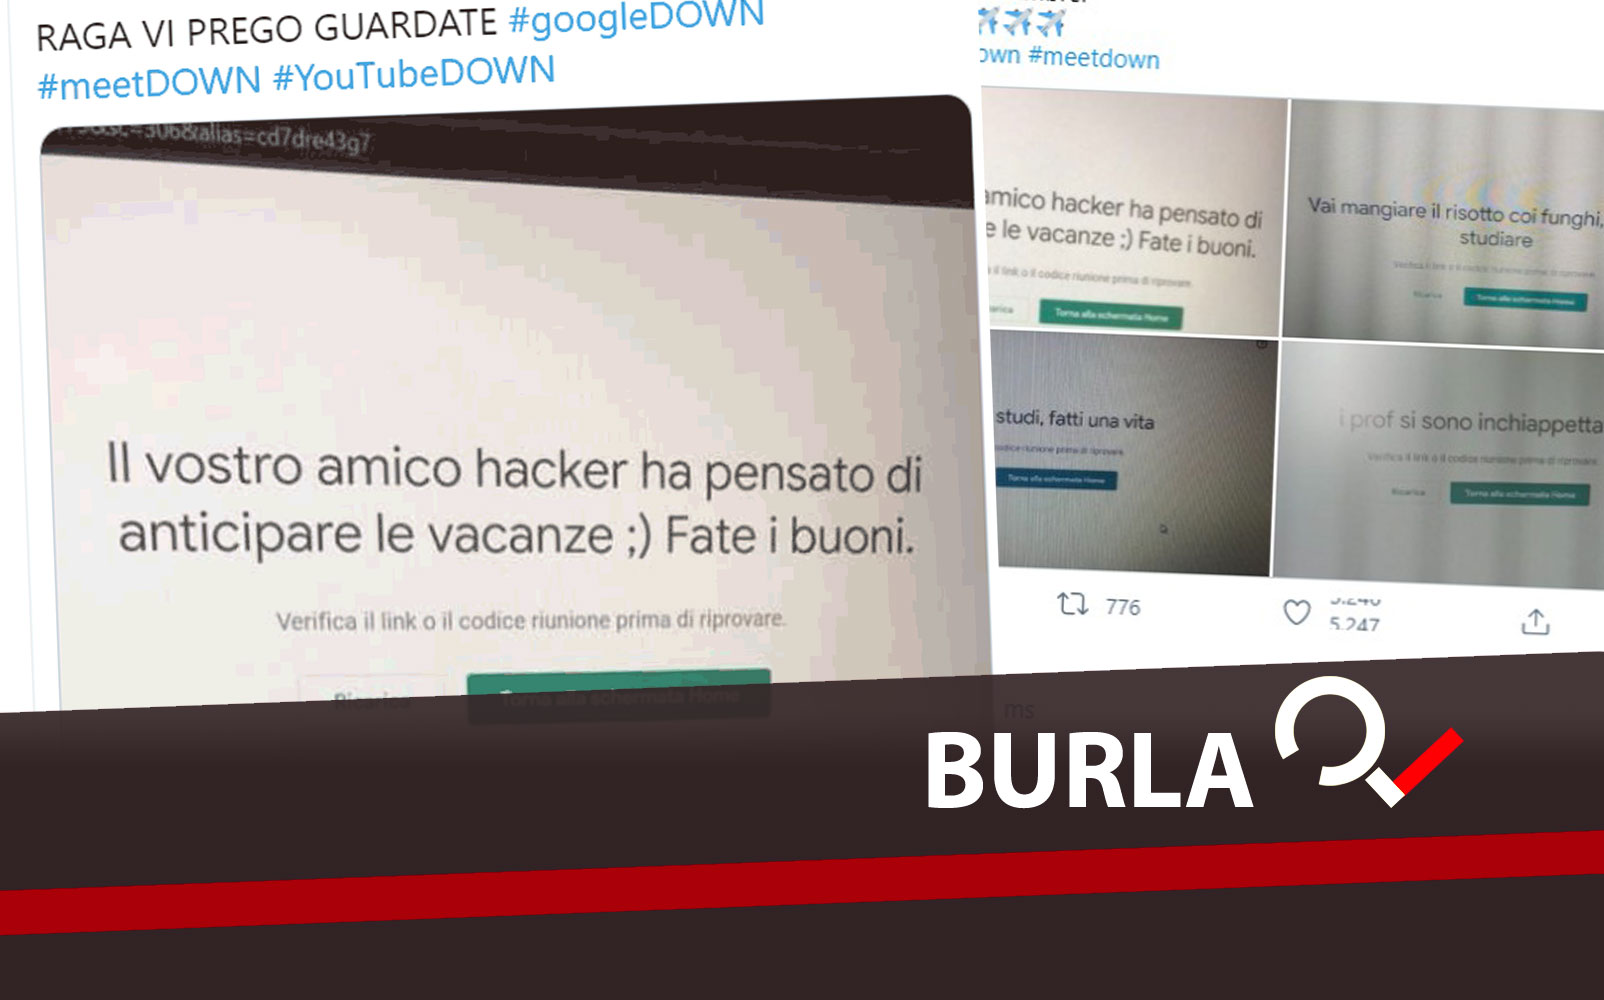 Google Down Le False Schermate Di Meet E Il Fantomatico Attacco Hacker Goliardia Italiana Open